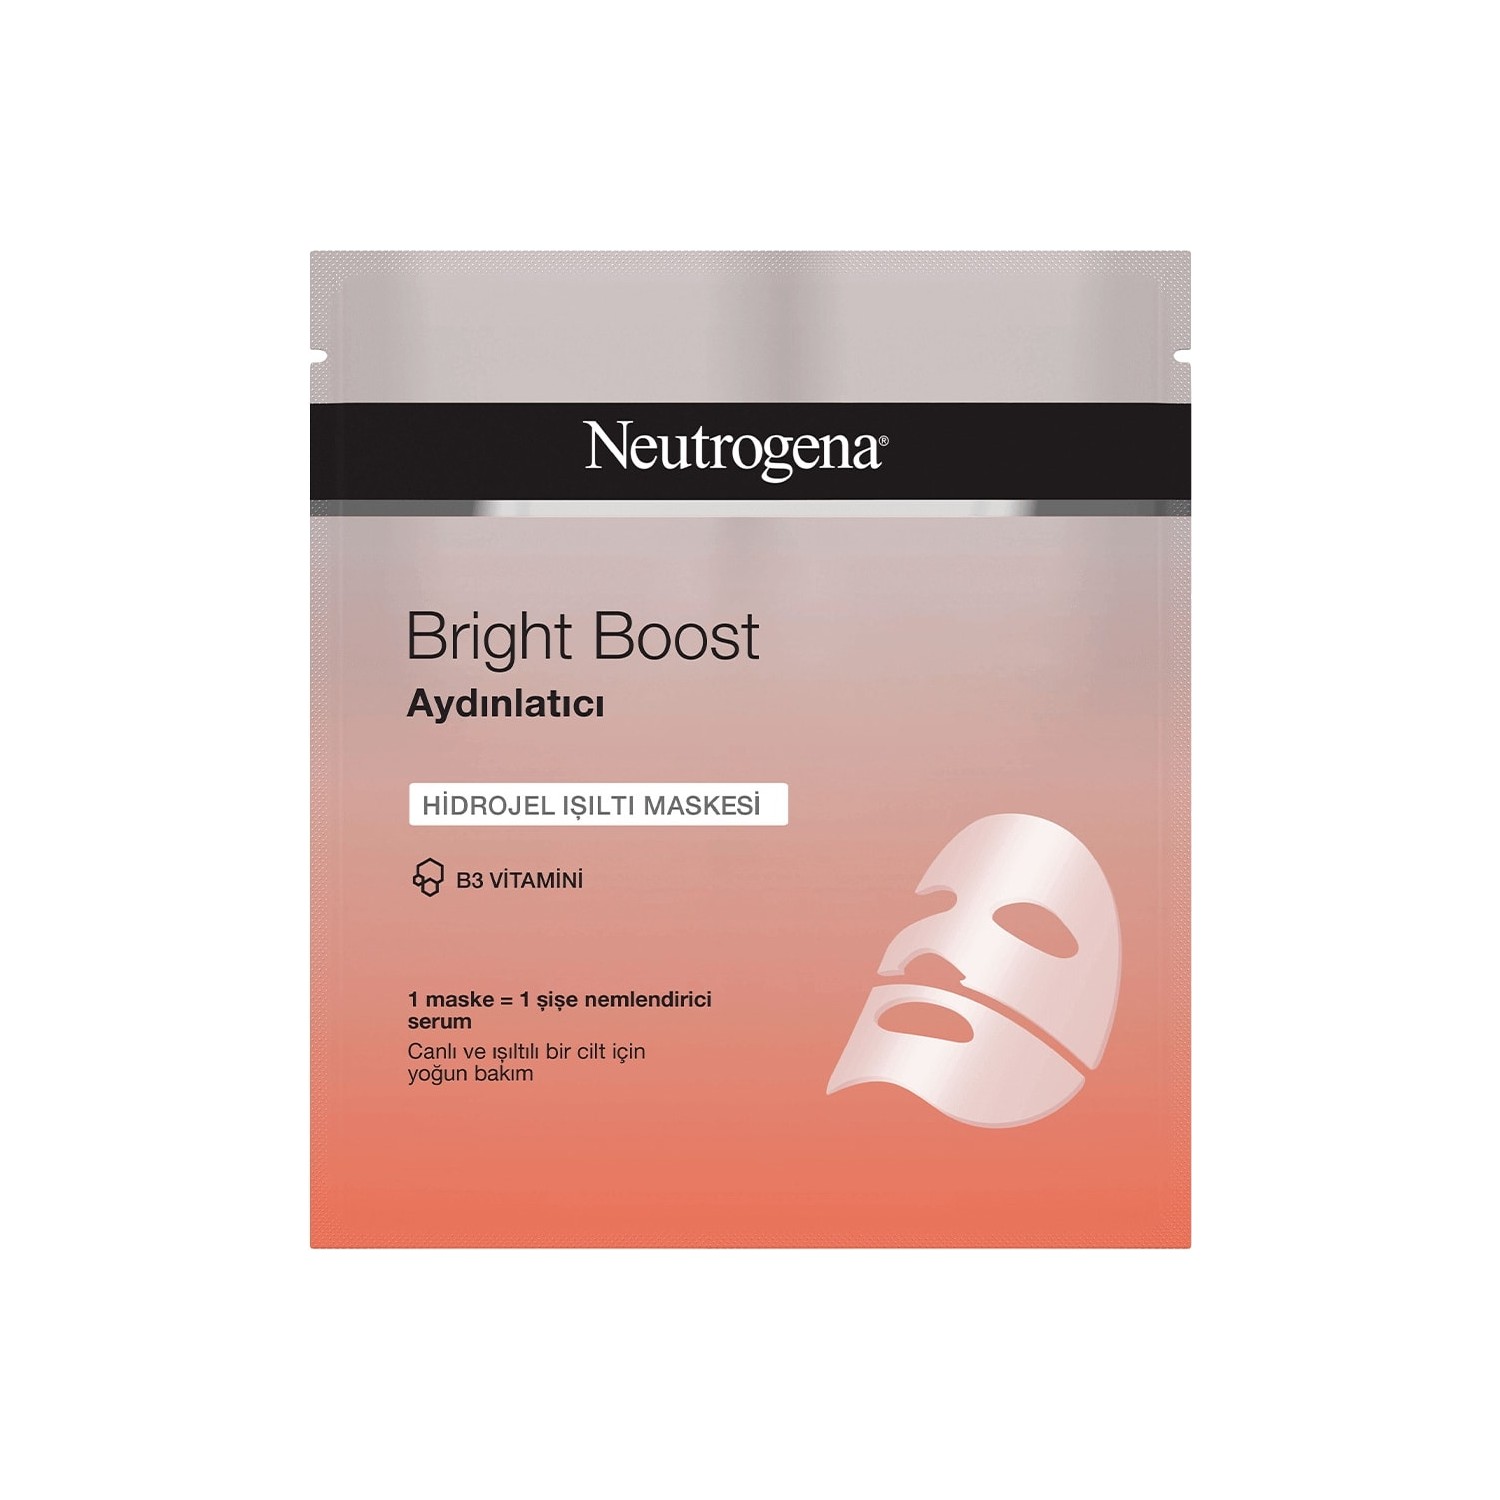 Маска для лица Neutrogena Bright Boost гидрогелевая для сияния кожи, 30 мл цена и фото